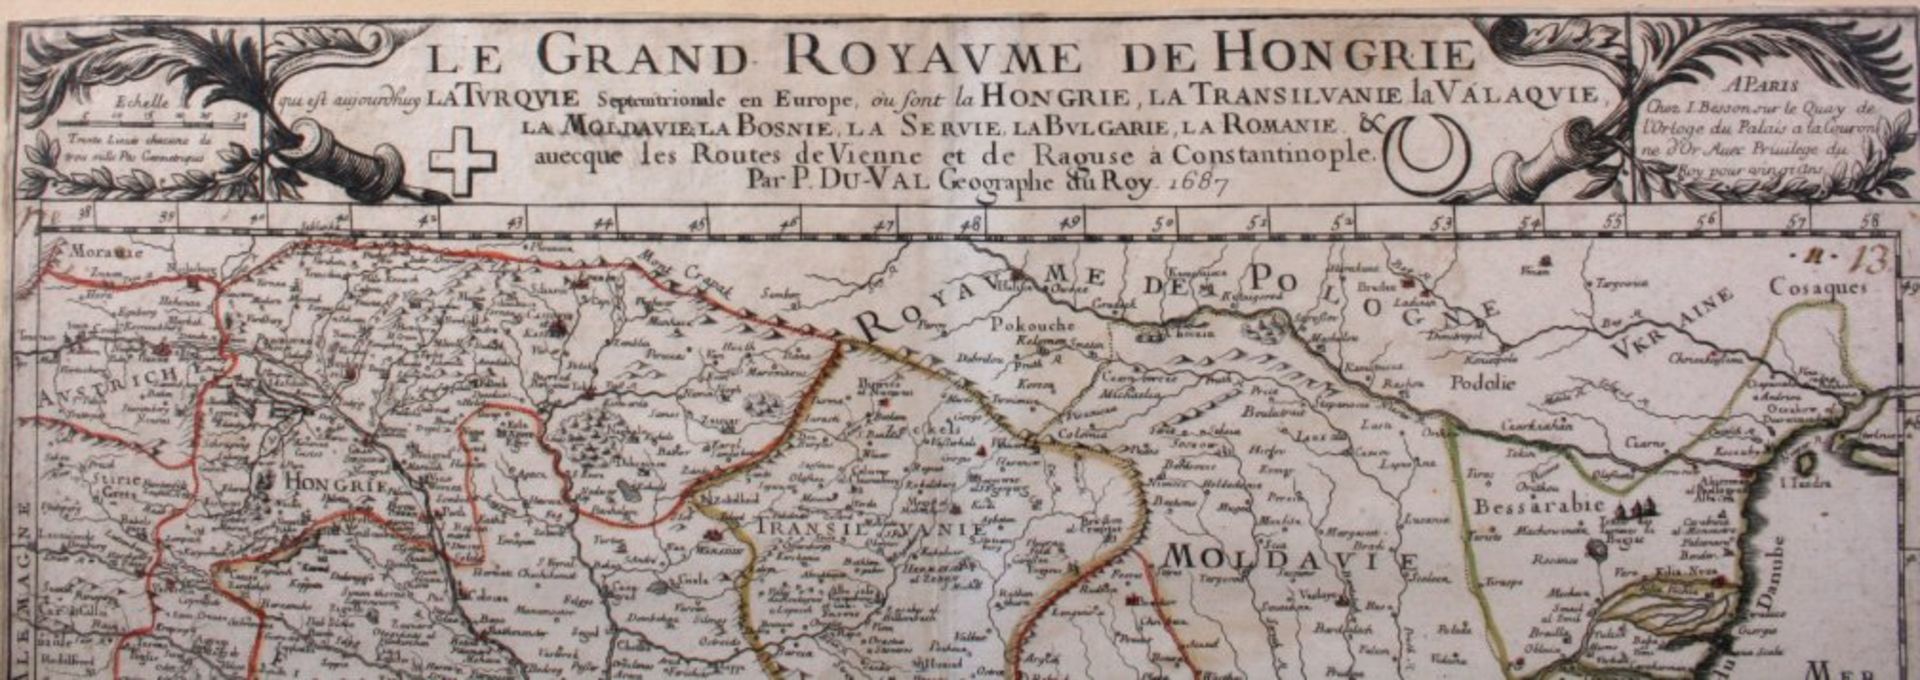 Le Grand Royavme de Hongrie...  Paris 1687Par Pierre Du Val. Altkolorierte Kupferstichkarte, ca. - Image 2 of 2